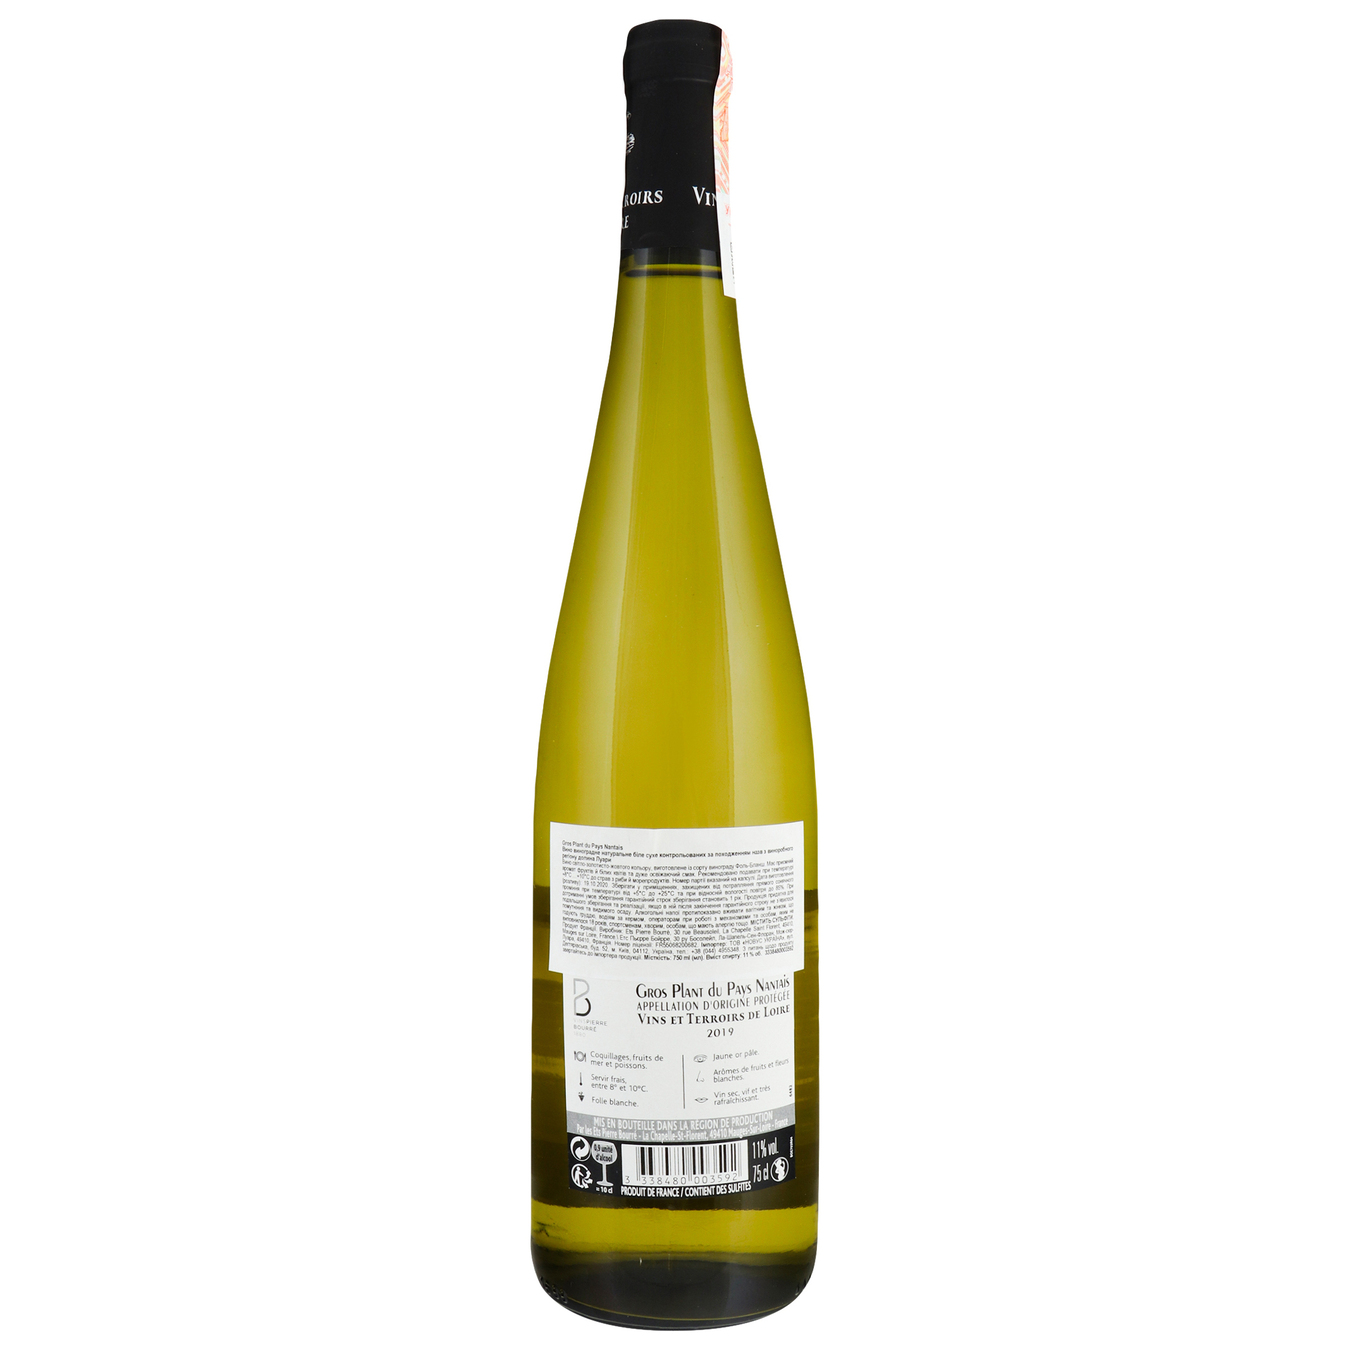 Вино Vins et Terroirs de Loire Gros Plant du Pays Nantais белое сухое 11%0,75л 2